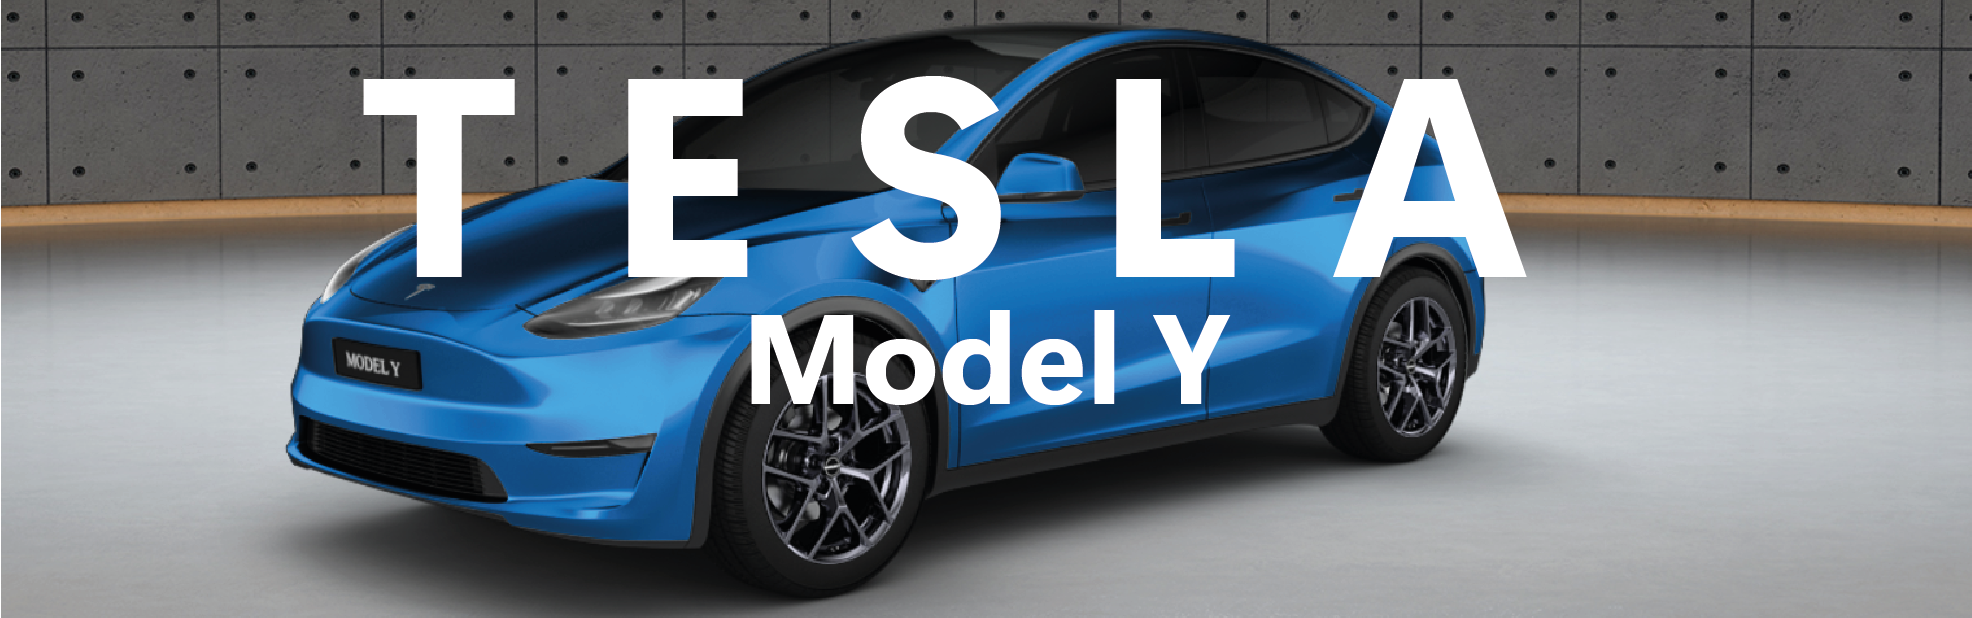 Tesla Model Y - Alle Infos zu Felgen, Reifen und Kompletträder